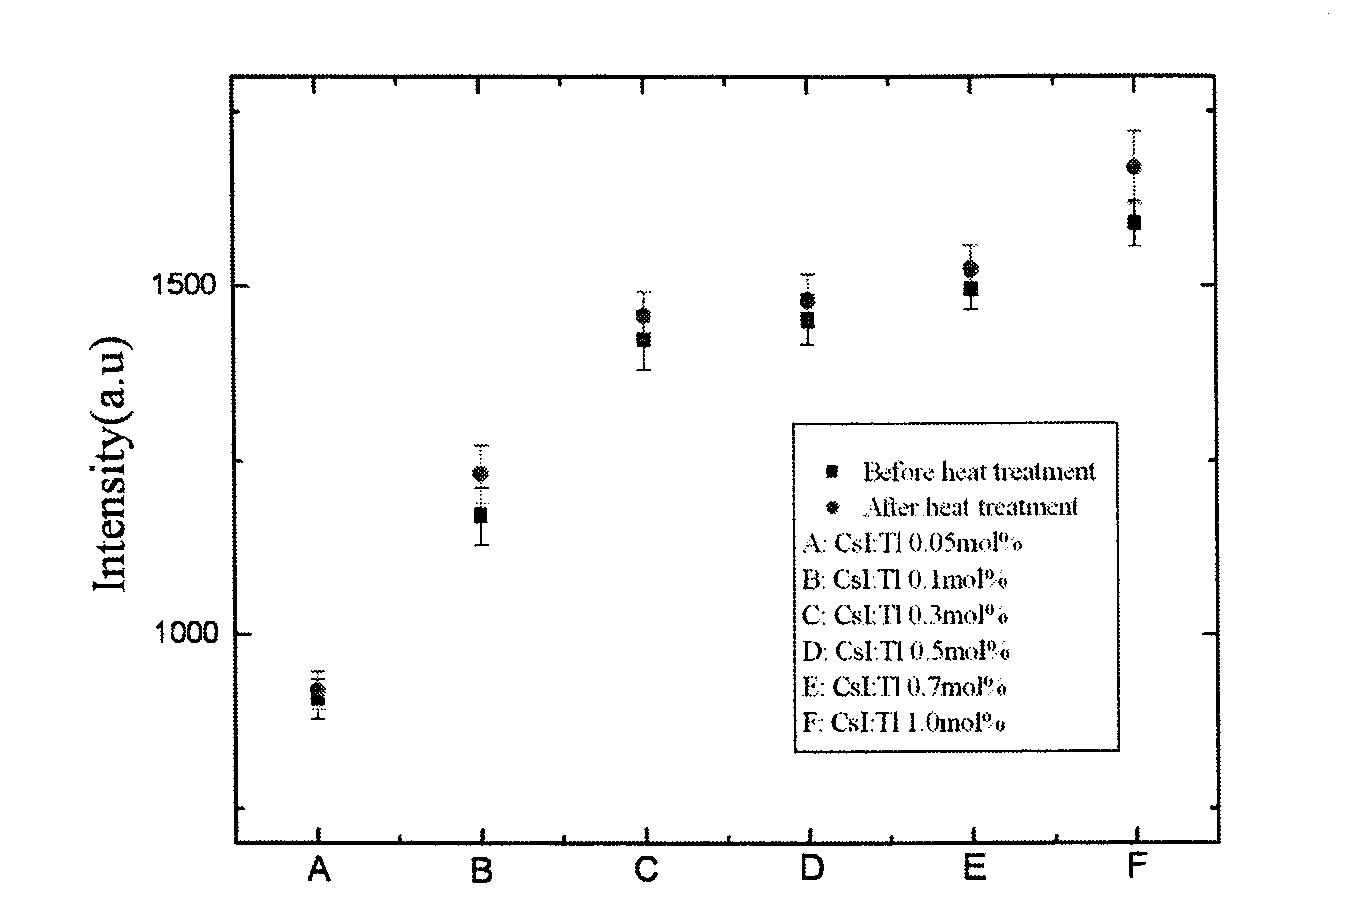 Tl의 도핑 농도에 따른 CsI(Tl) 박막 섬광체의 상대적인 광량